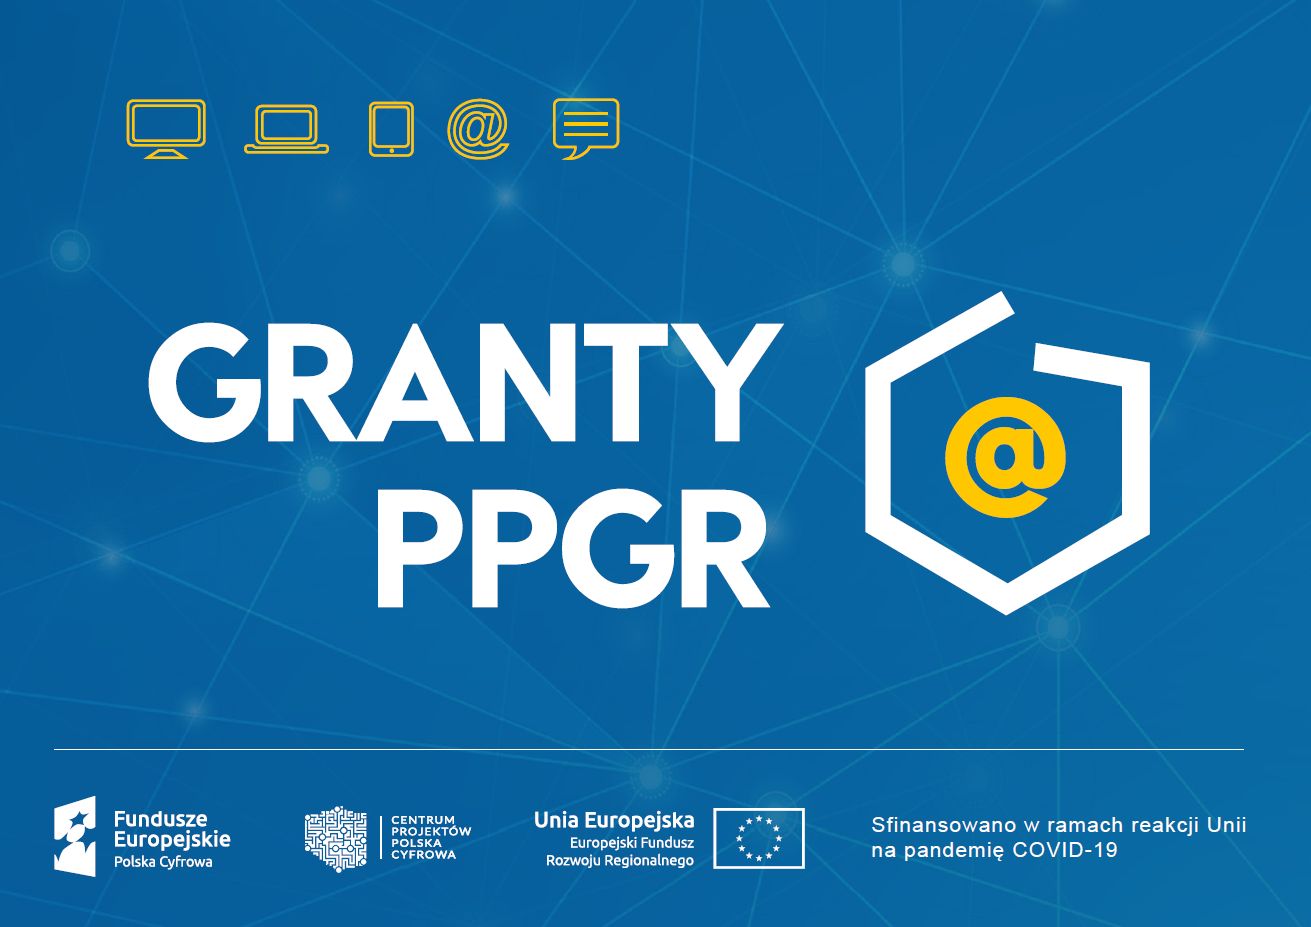 Ilustracja do informacji: Nabór uzupełniający w programie Granty PPGR